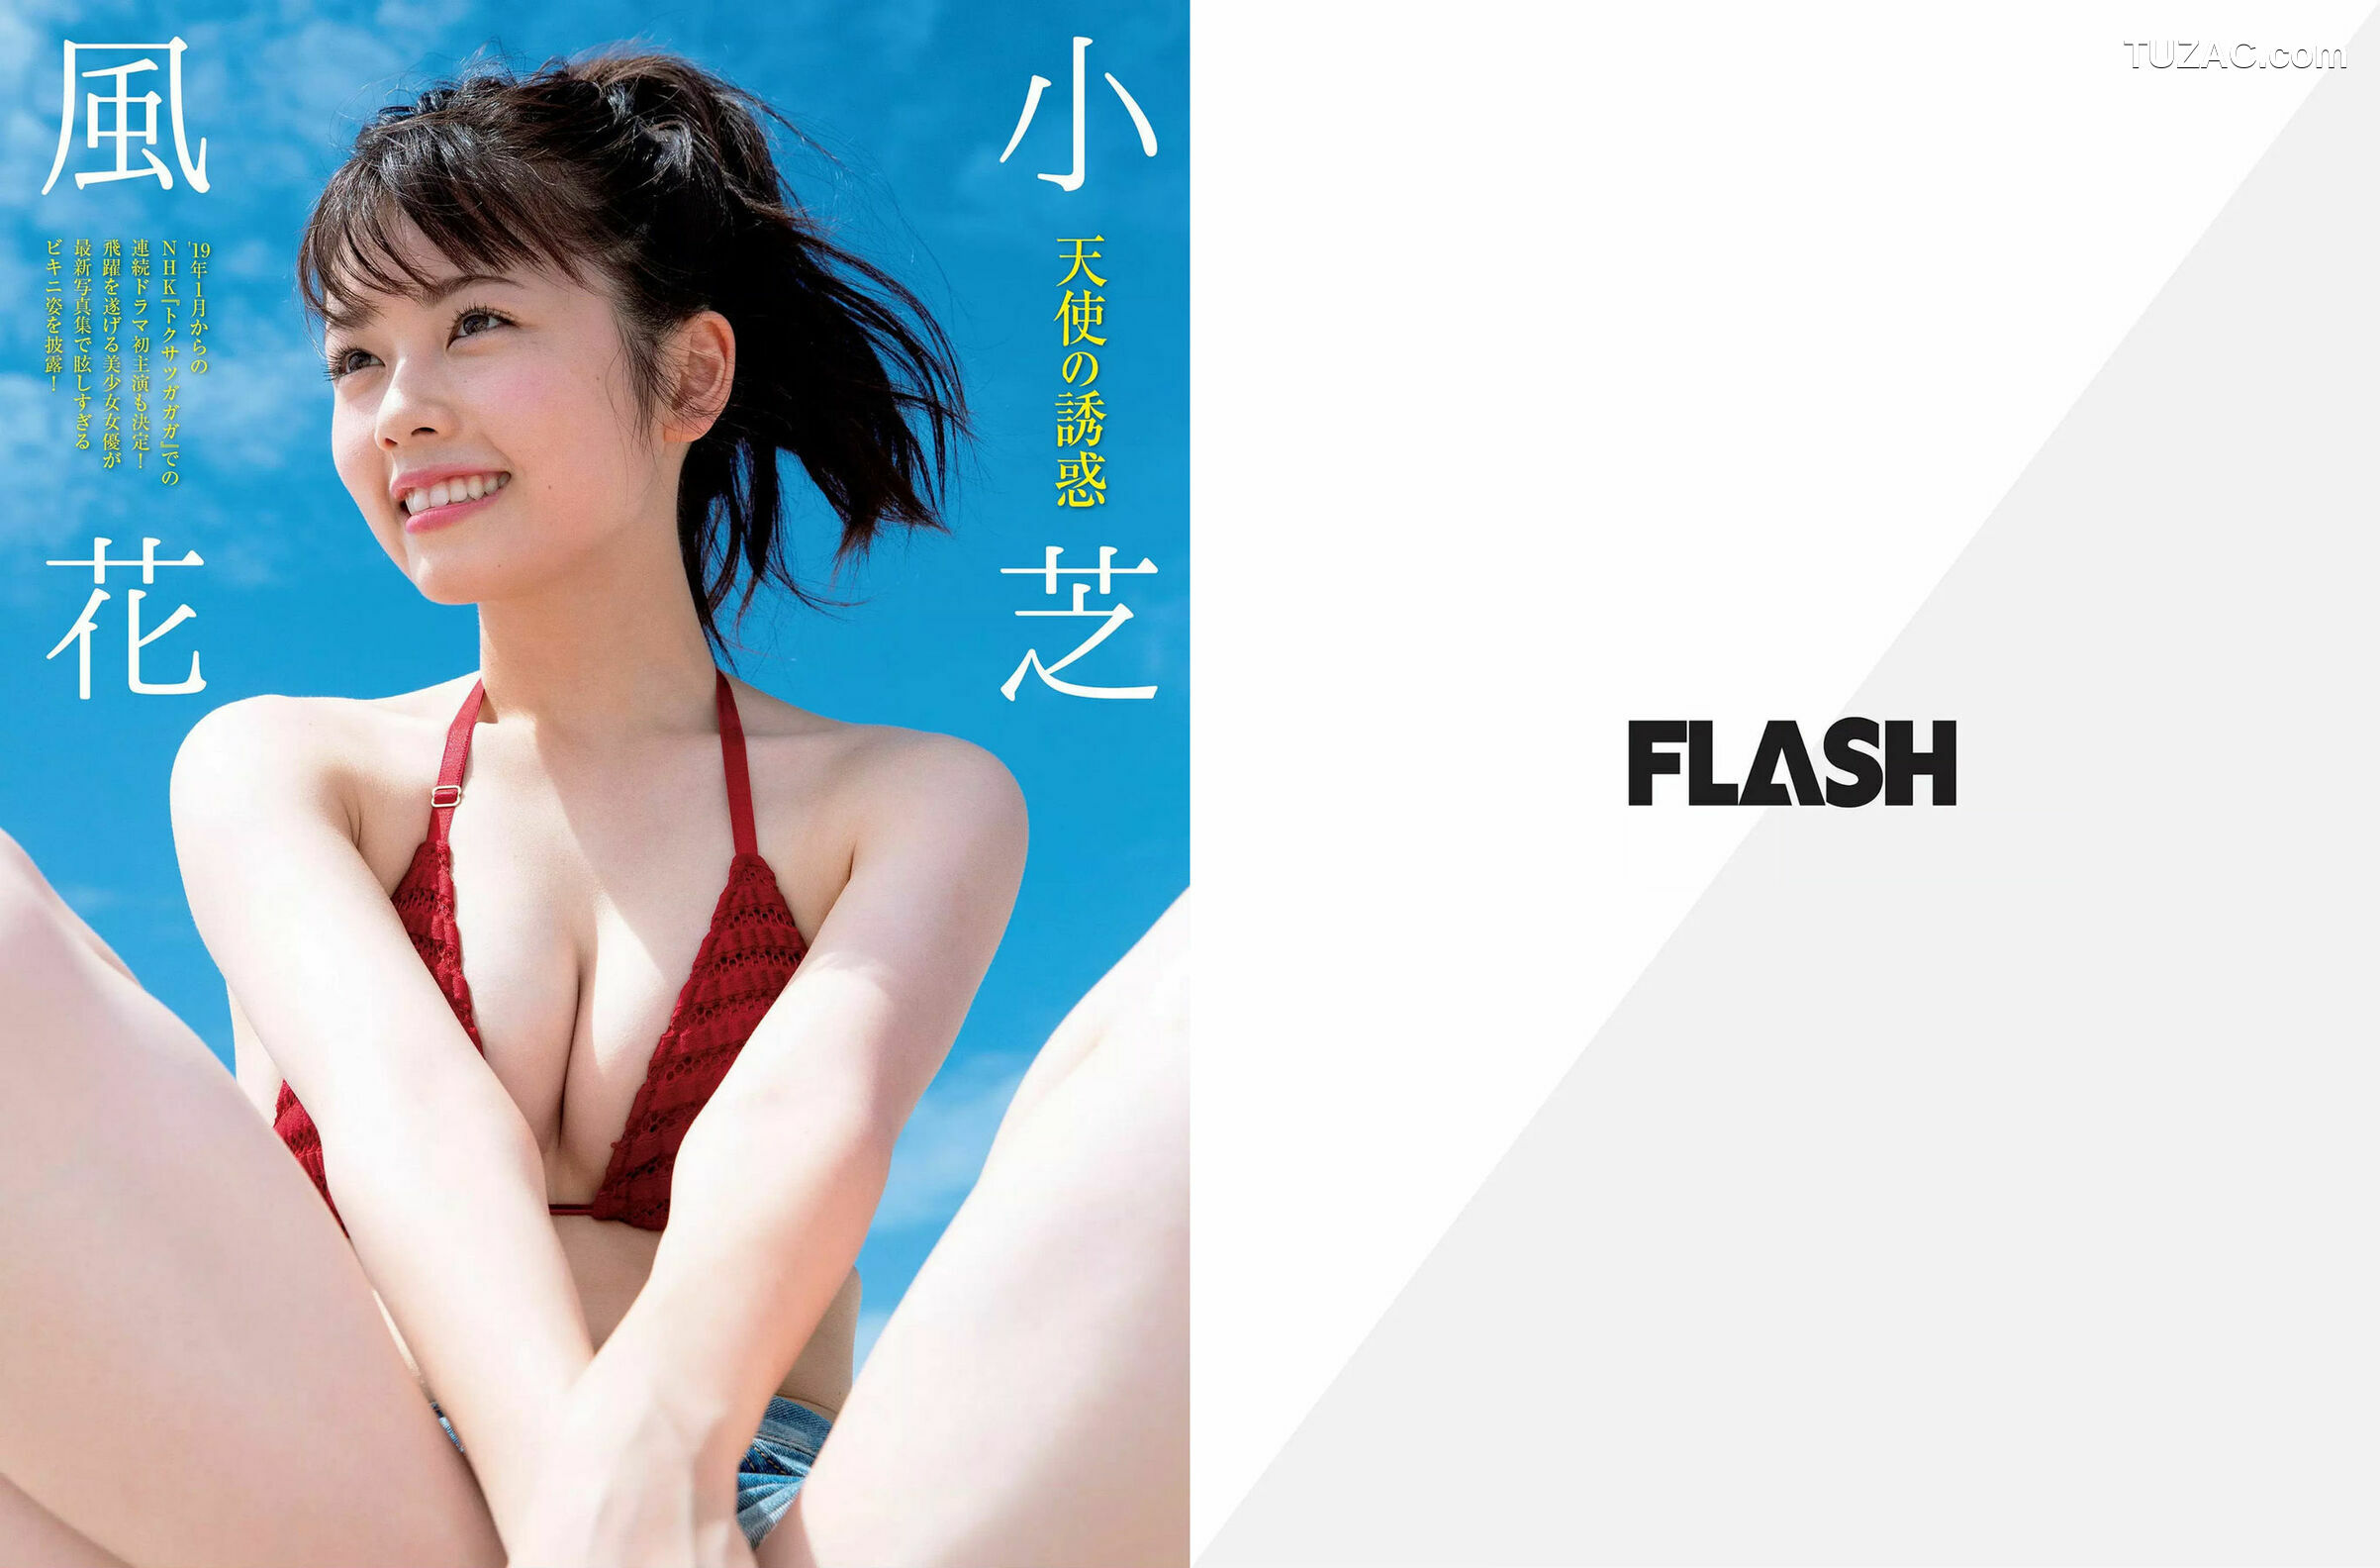 FLASH杂志写真_ 筧美和子 小芝風花 中丸シオン 2019.01.01 写真杂志[22P]